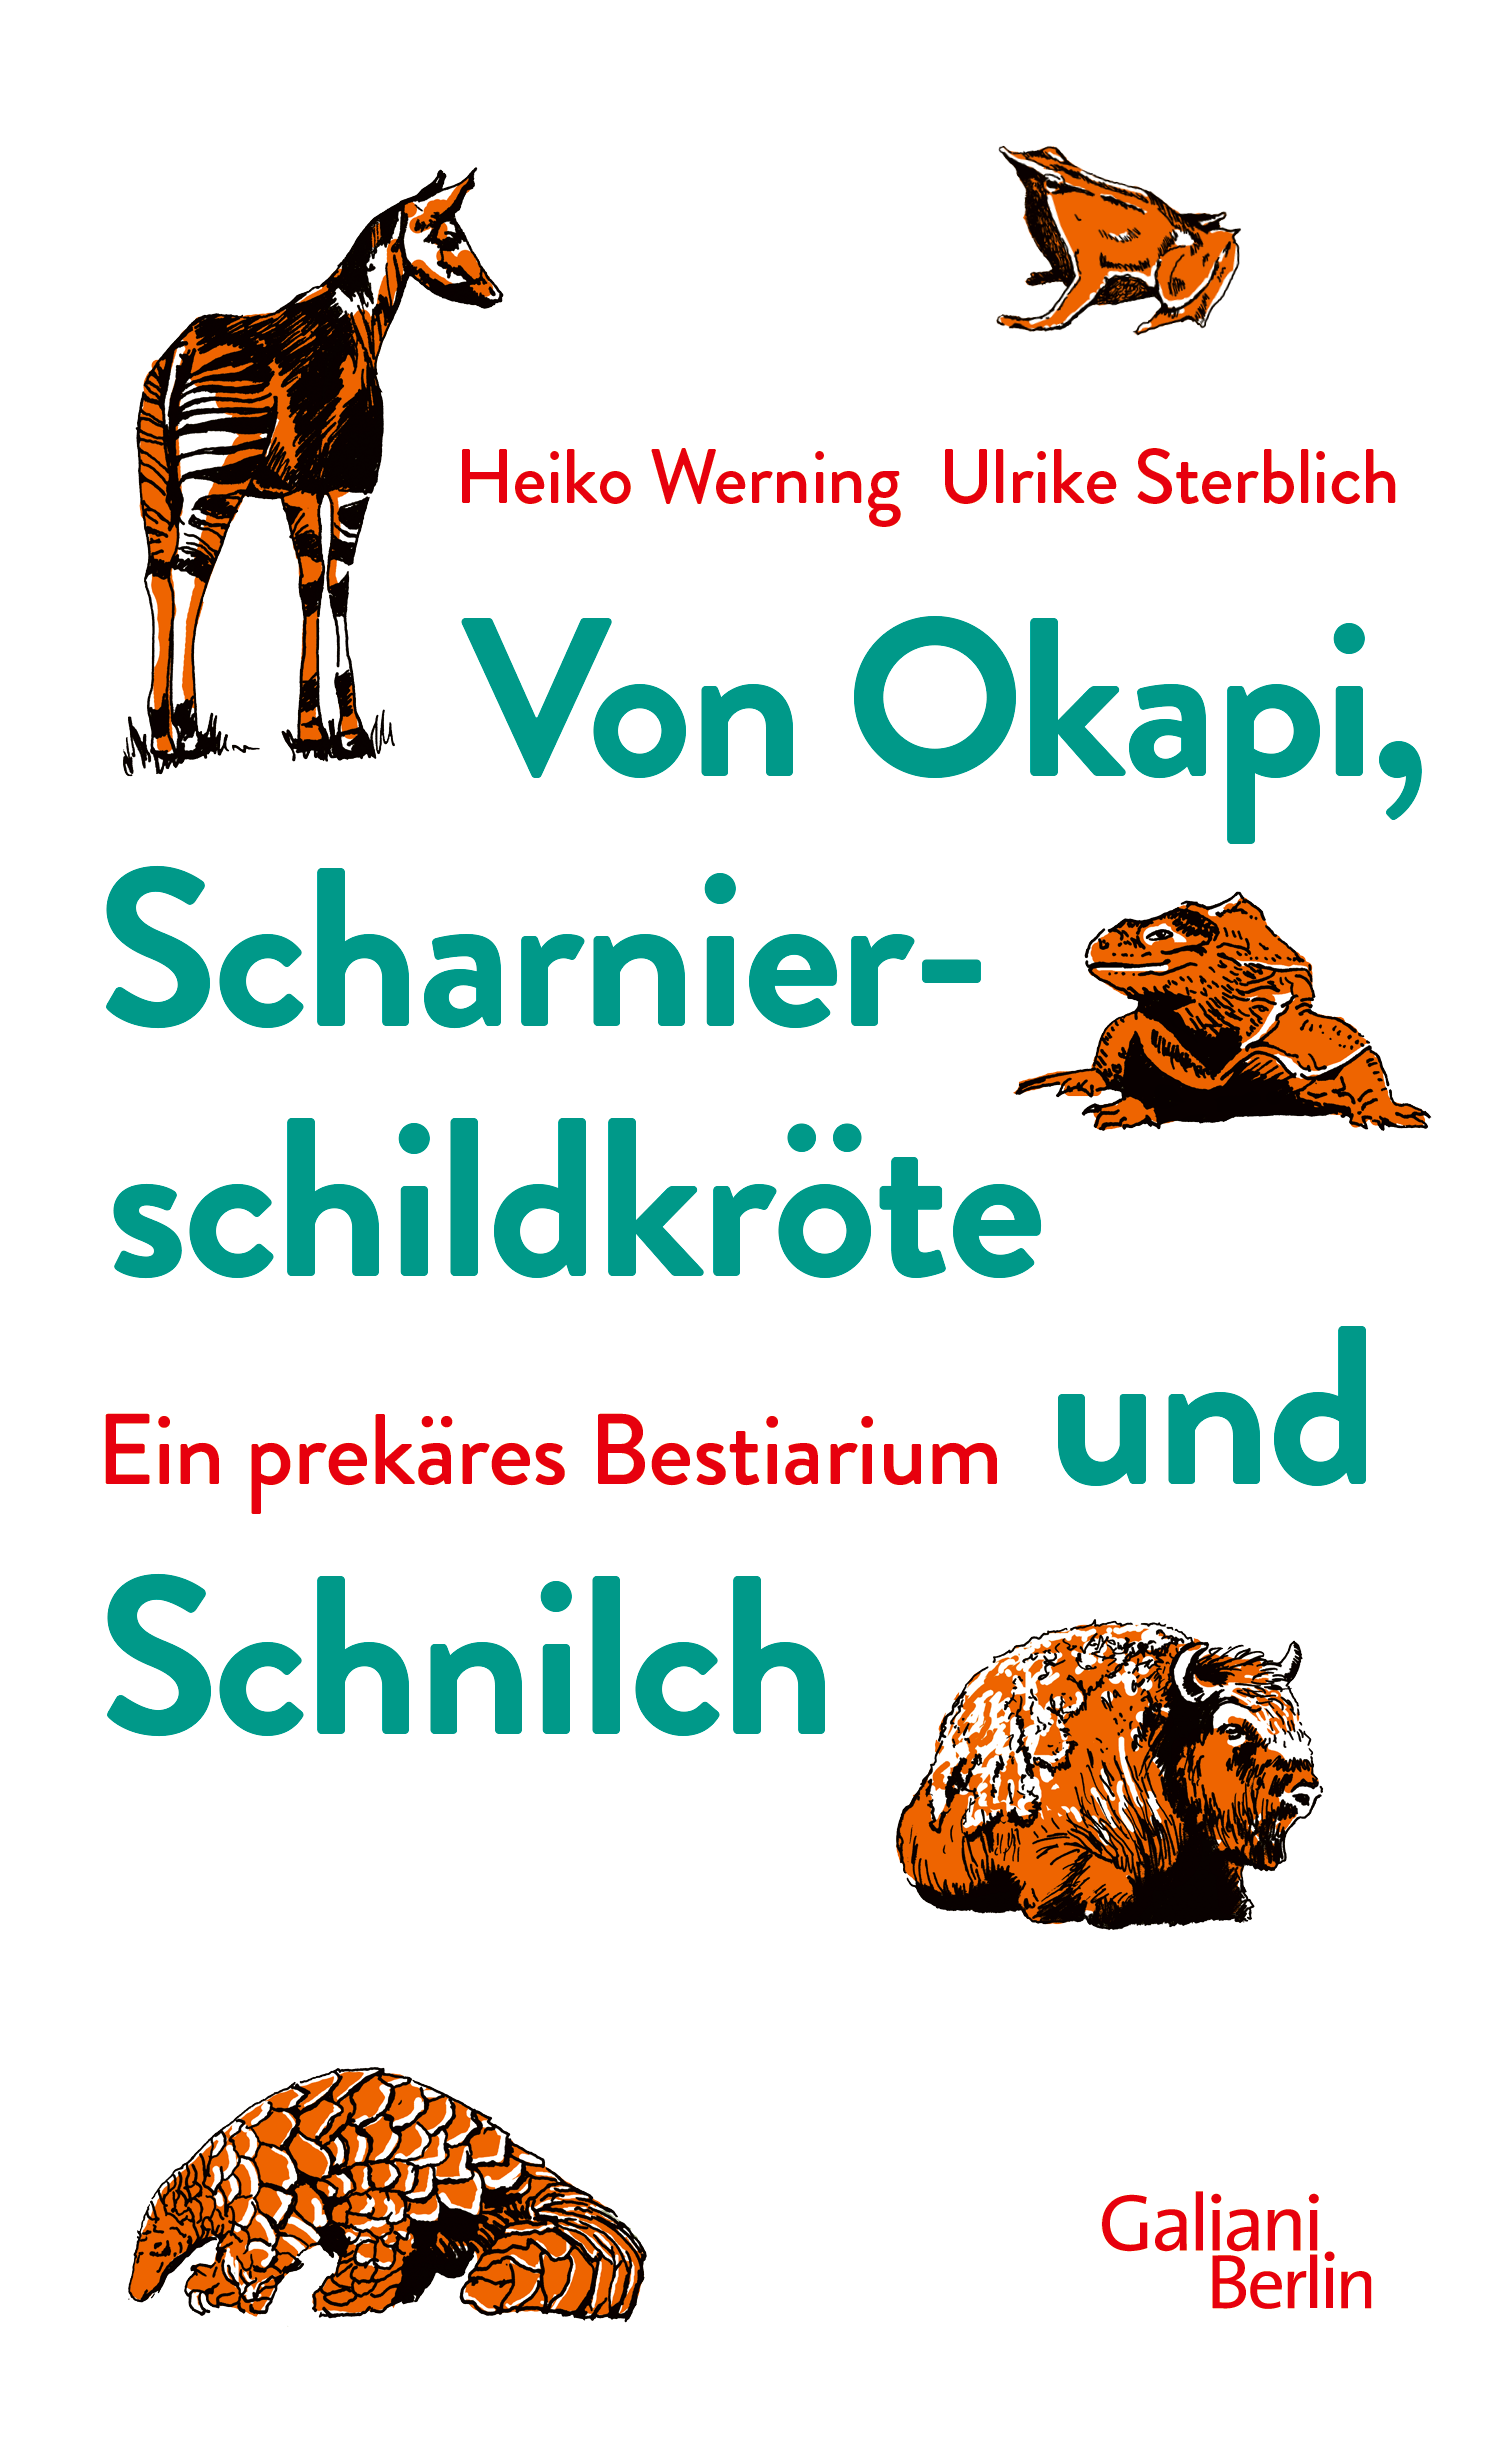 Buchcover_Werning_Sterblich_Von Okapi, Scharnierschildkröte und Schnilch_© Galiani Berlin (1)